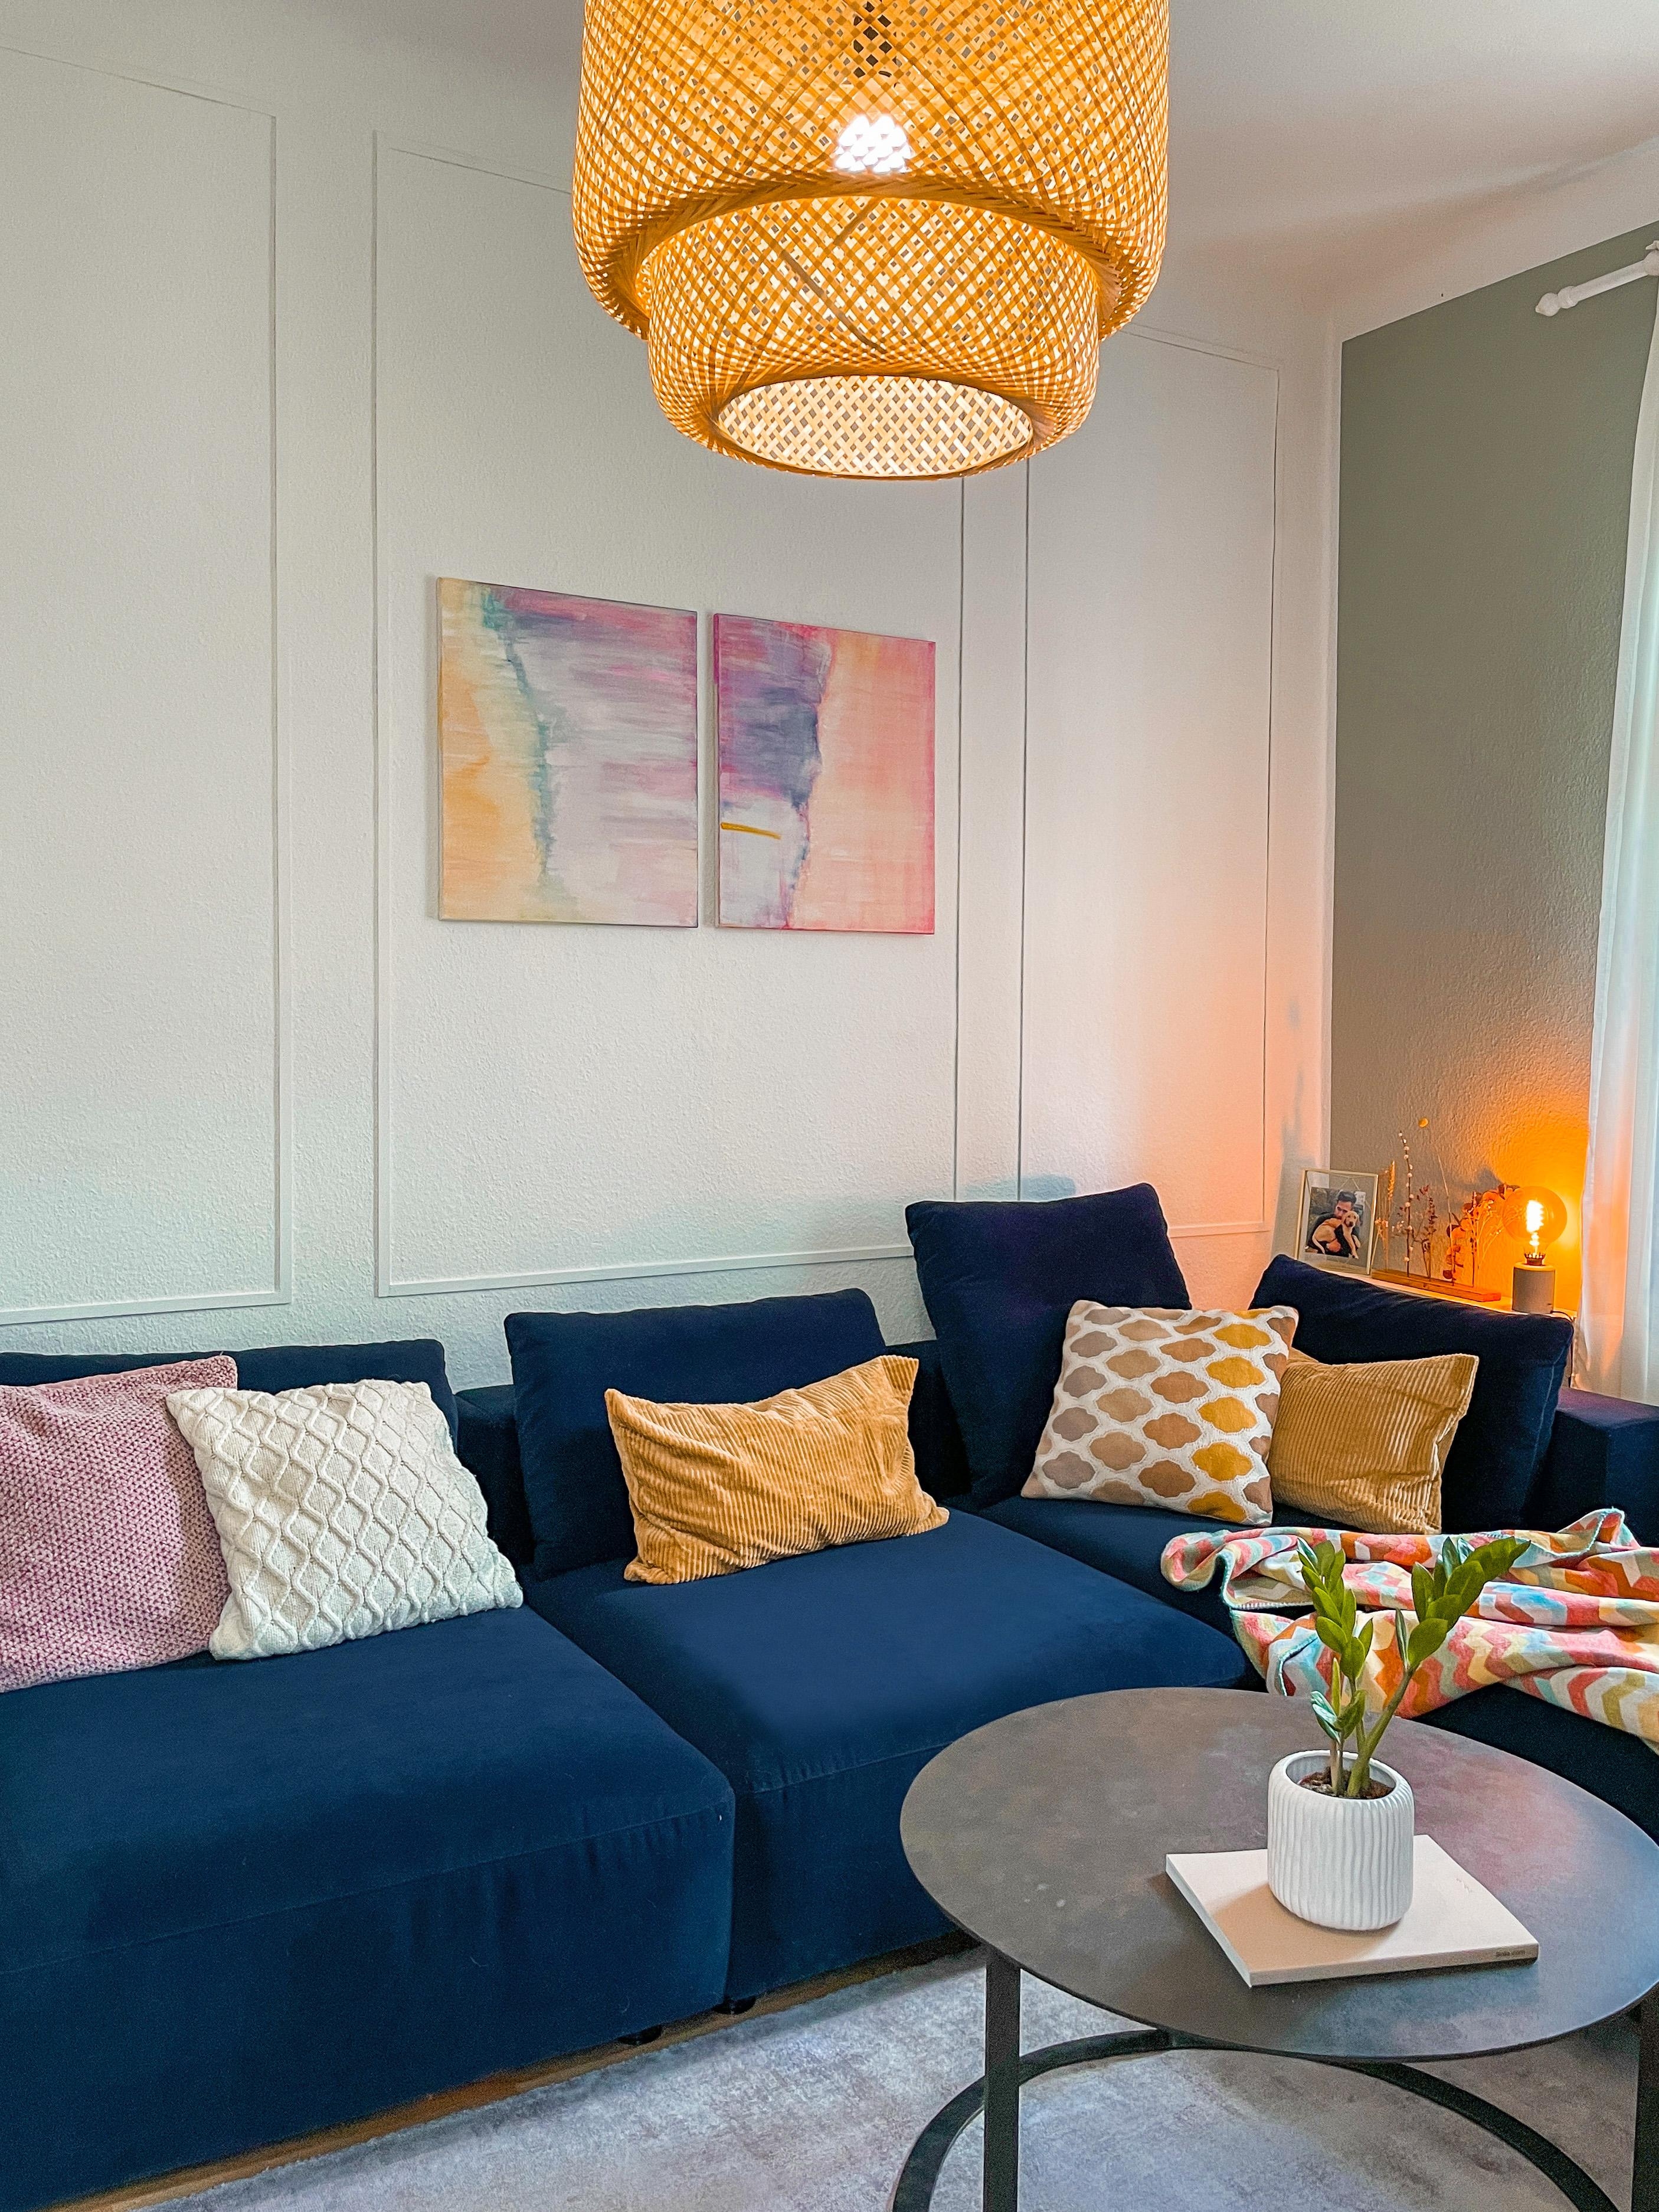 Sofasonntag 💙 #livingroom #wohnzimmer #couch #sofa #wandverkleidung #art #diy #bild